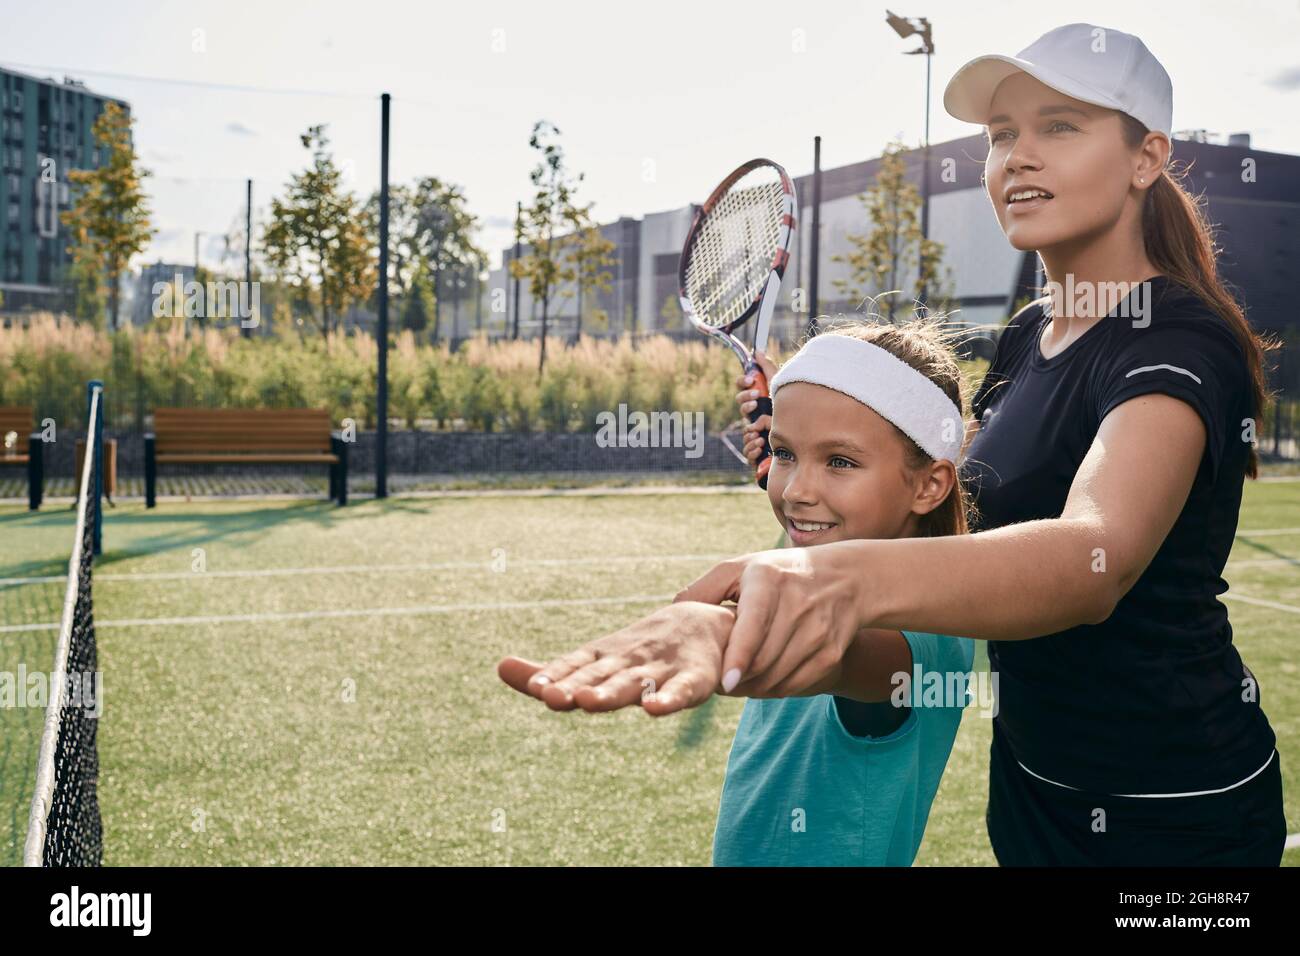 La entrenadora de tenis enseña a la niña a jugar al tenis en la cancha de hierba. Clase de tenis para un niño Foto de stock